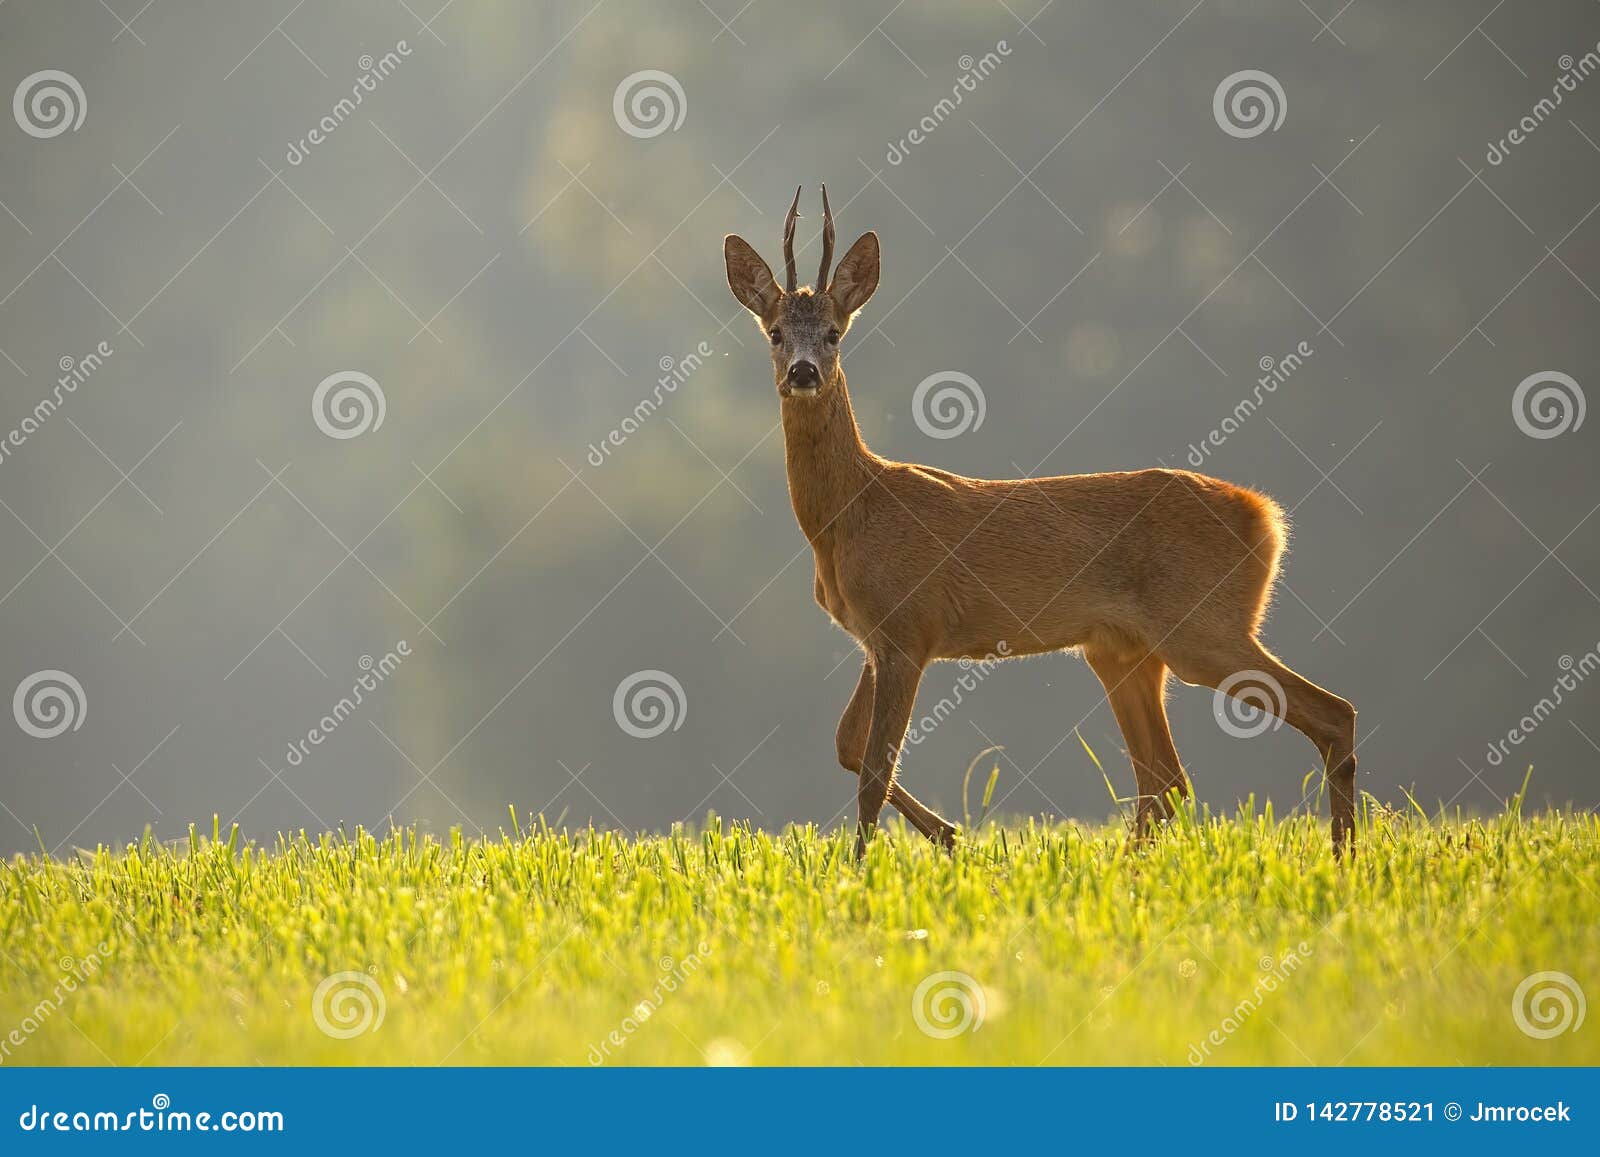 roe deer, capreolus capreolus, buck in summer.